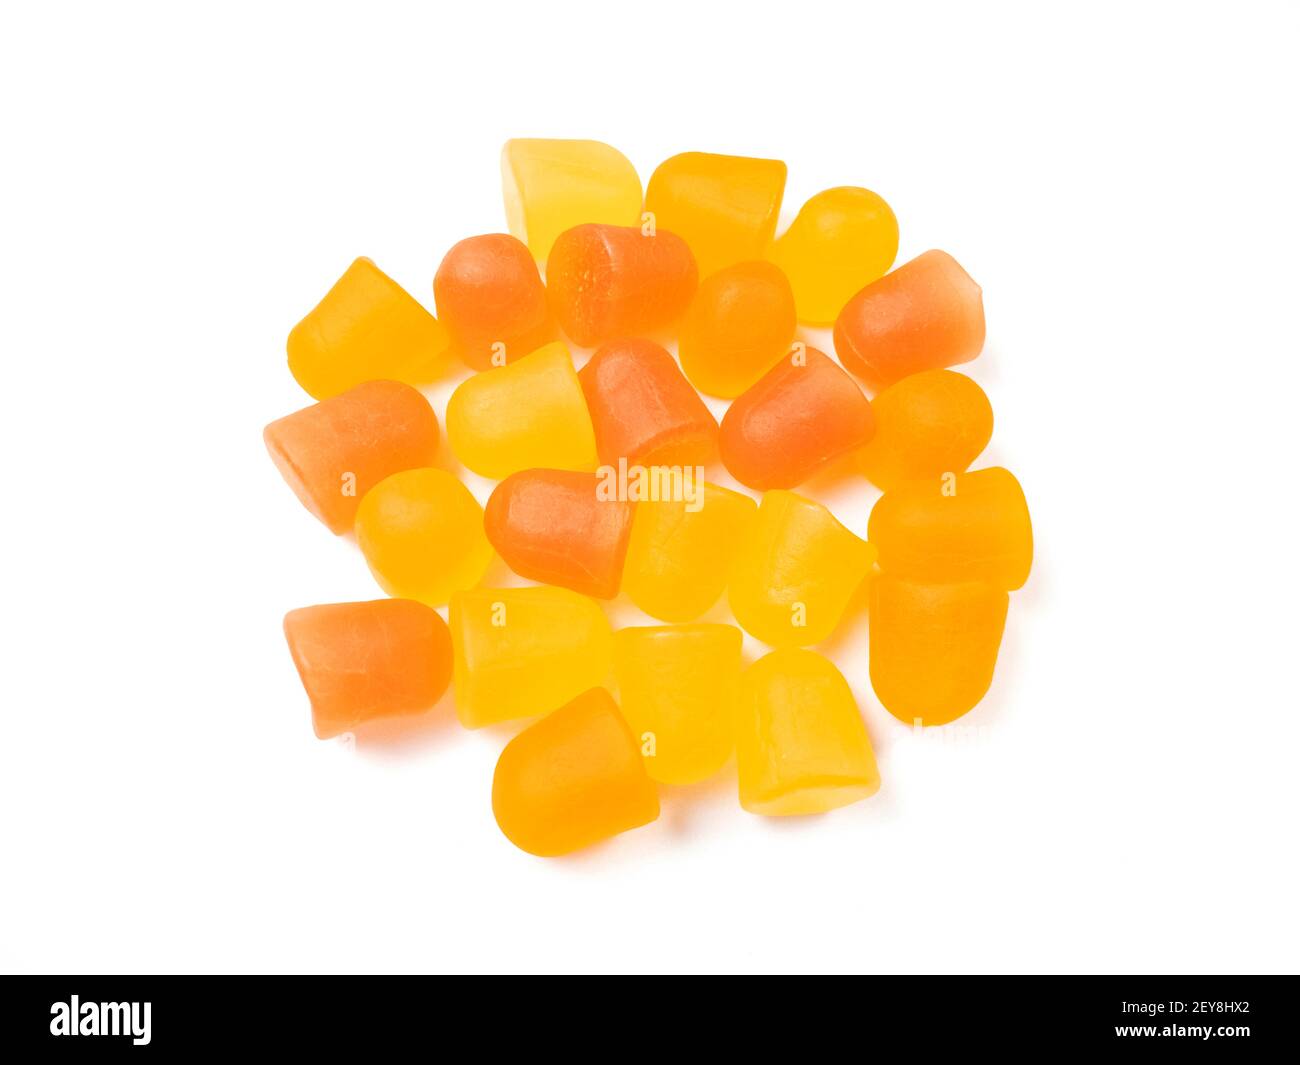 Gros plan de la texture des gommies multivitaminées orange et jaune. Concept de mode de vie sain. Banque D'Images